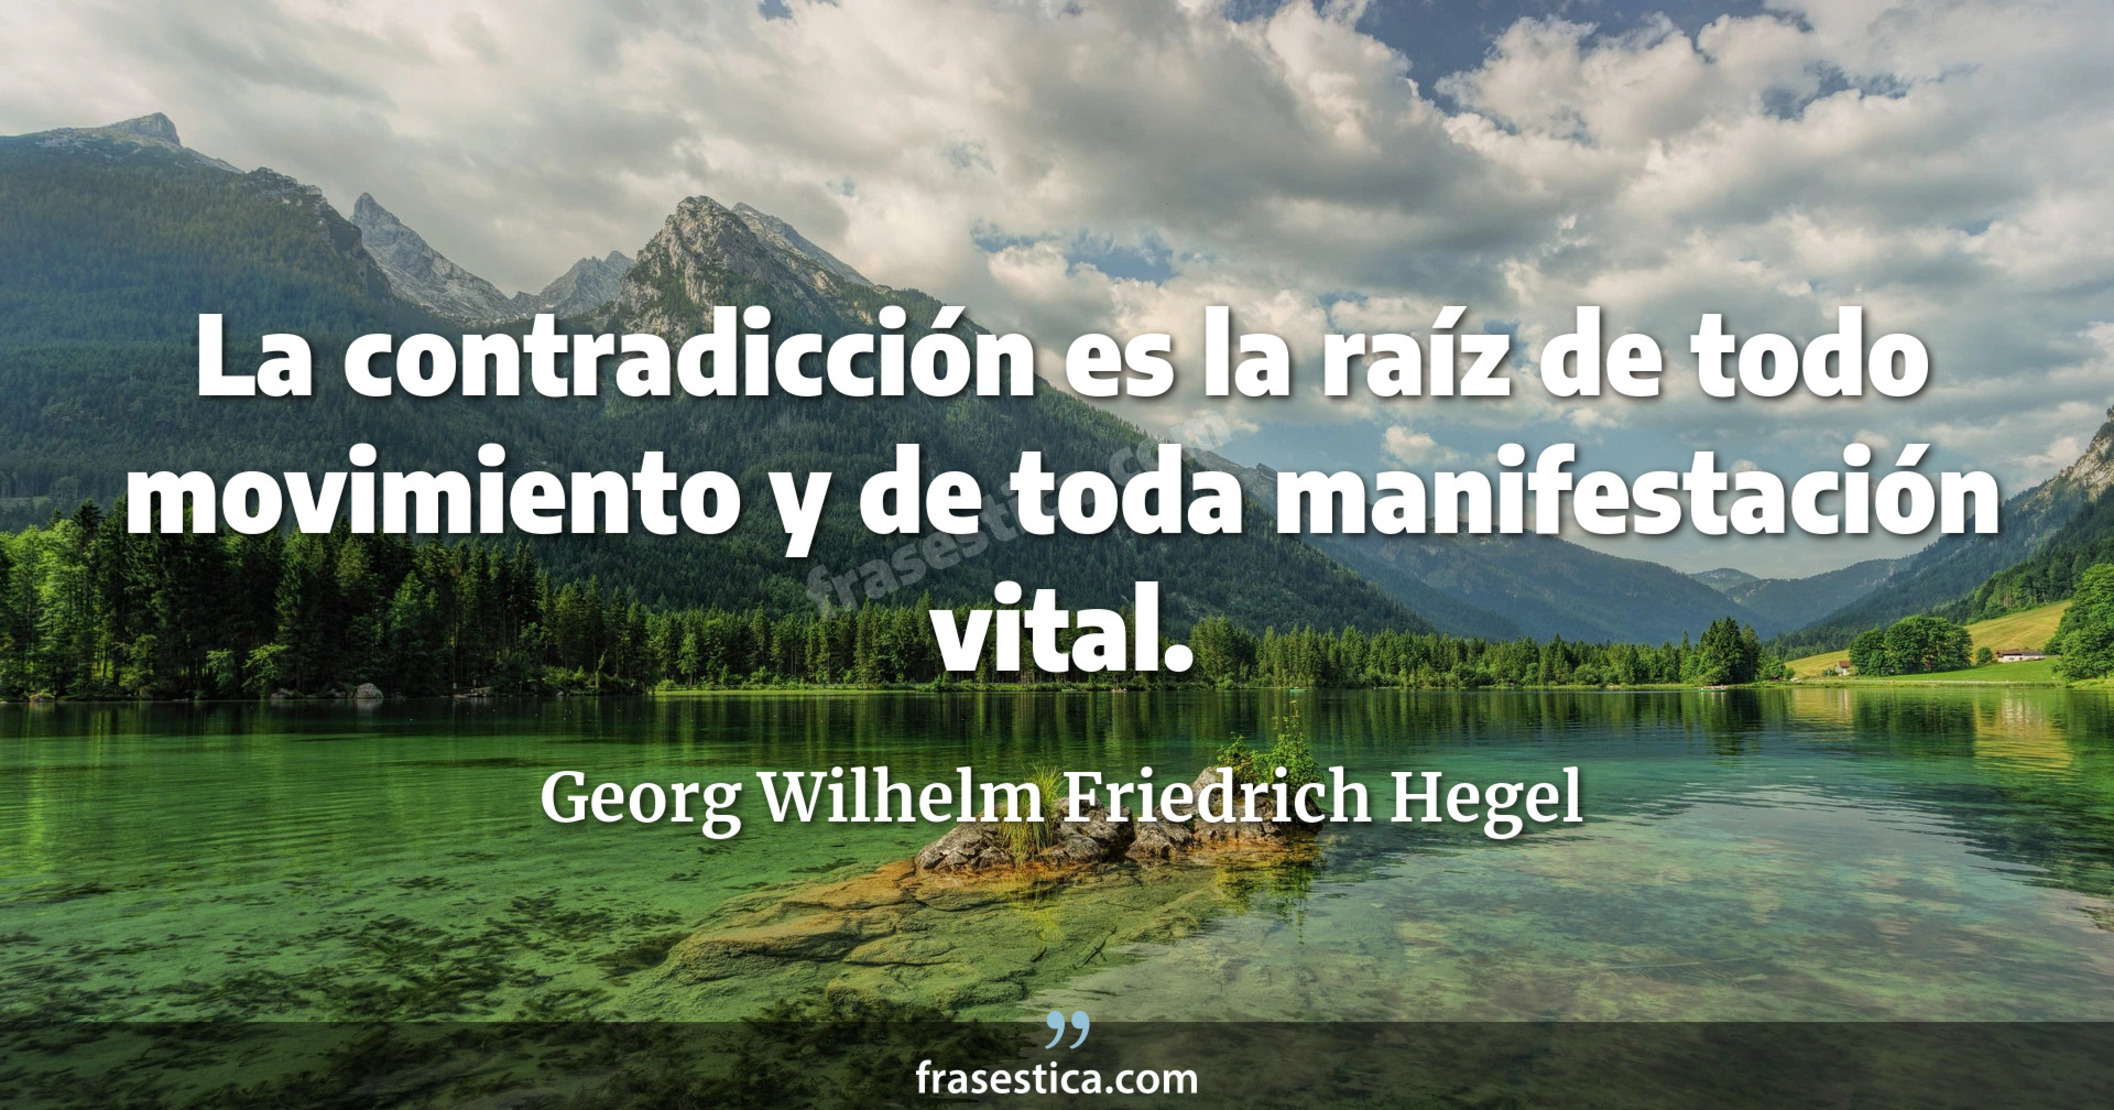 La contradicción es la raíz de todo movimiento y de toda manifestación vital. - Georg Wilhelm Friedrich Hegel